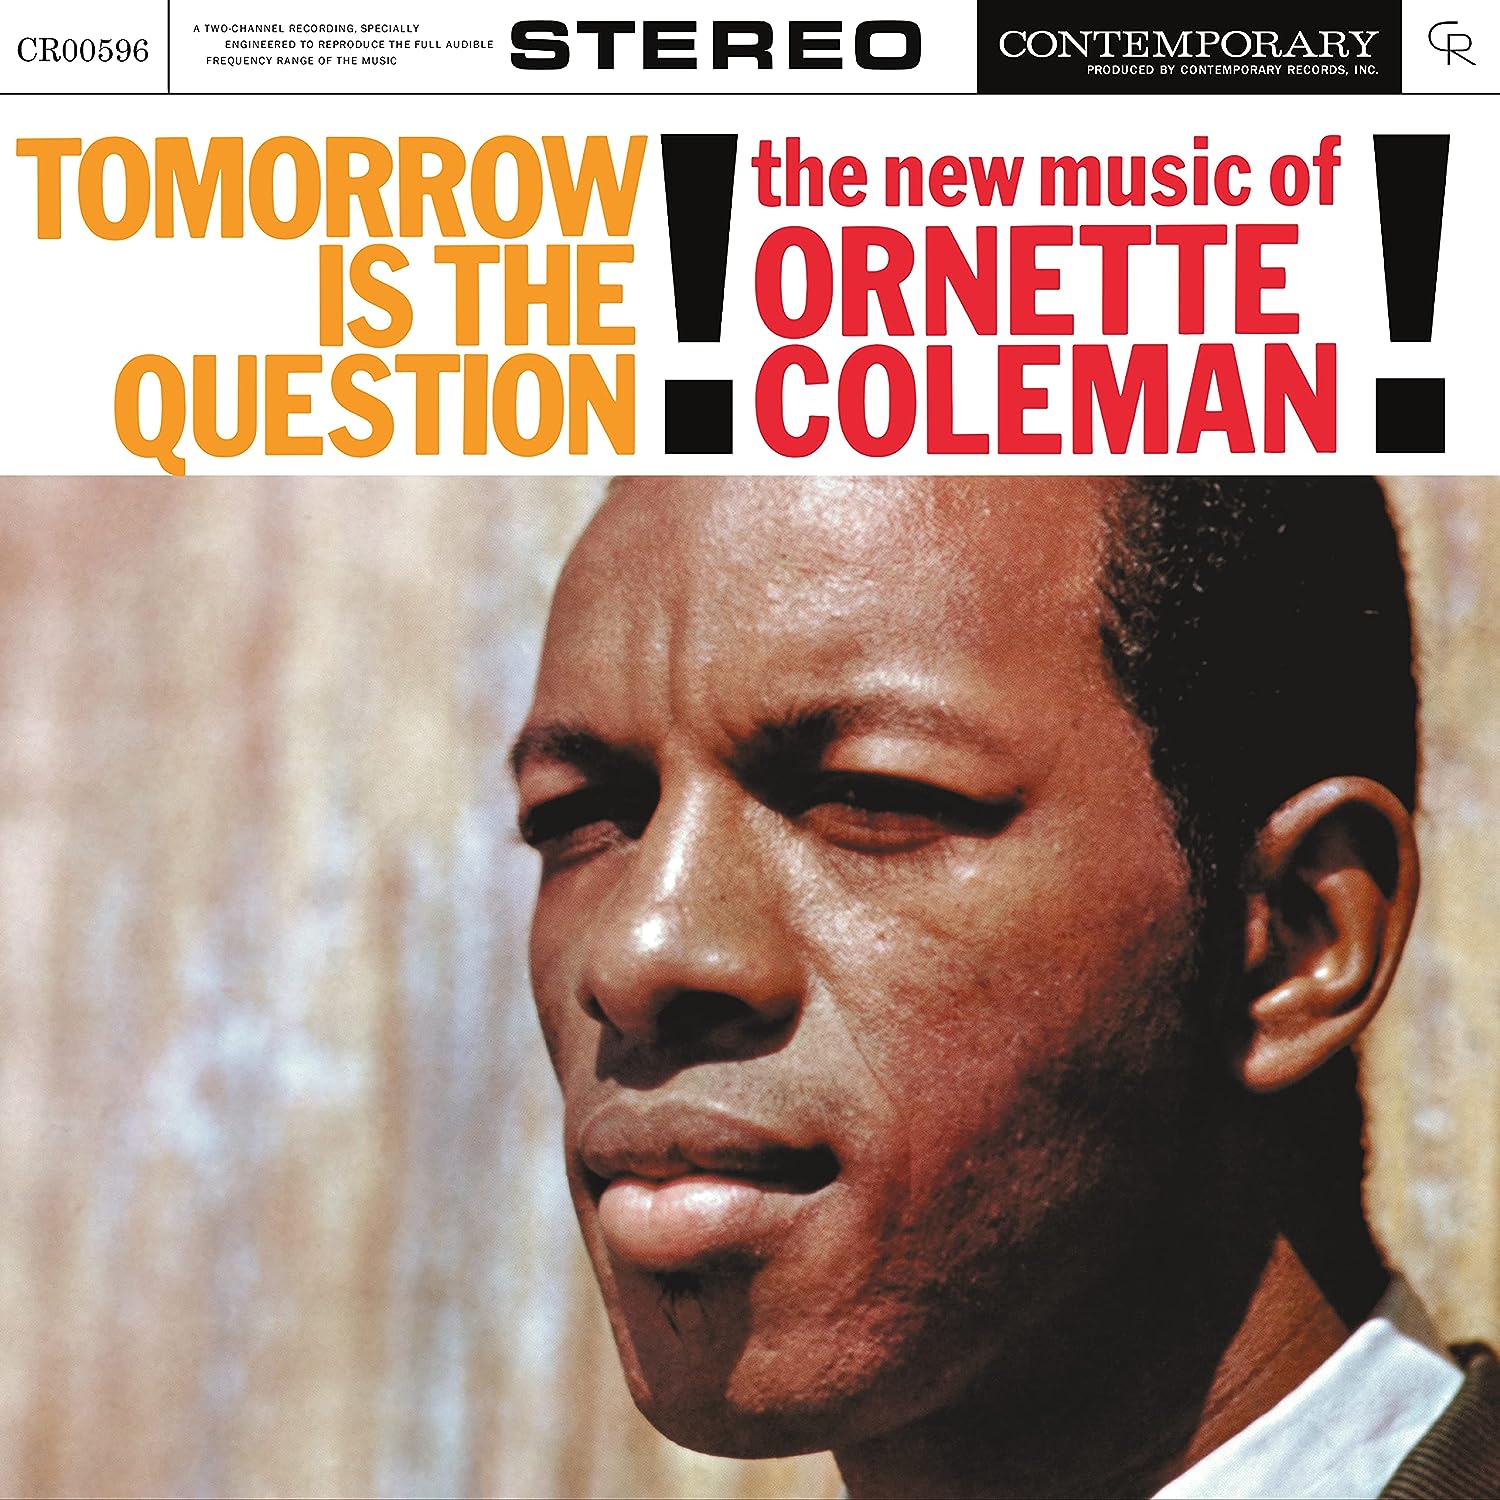 Джаз Universal (Aus) Ornette Coleman - Tomorrow Is The Question (Acoustic Sounds) (Black Vinyl LP)